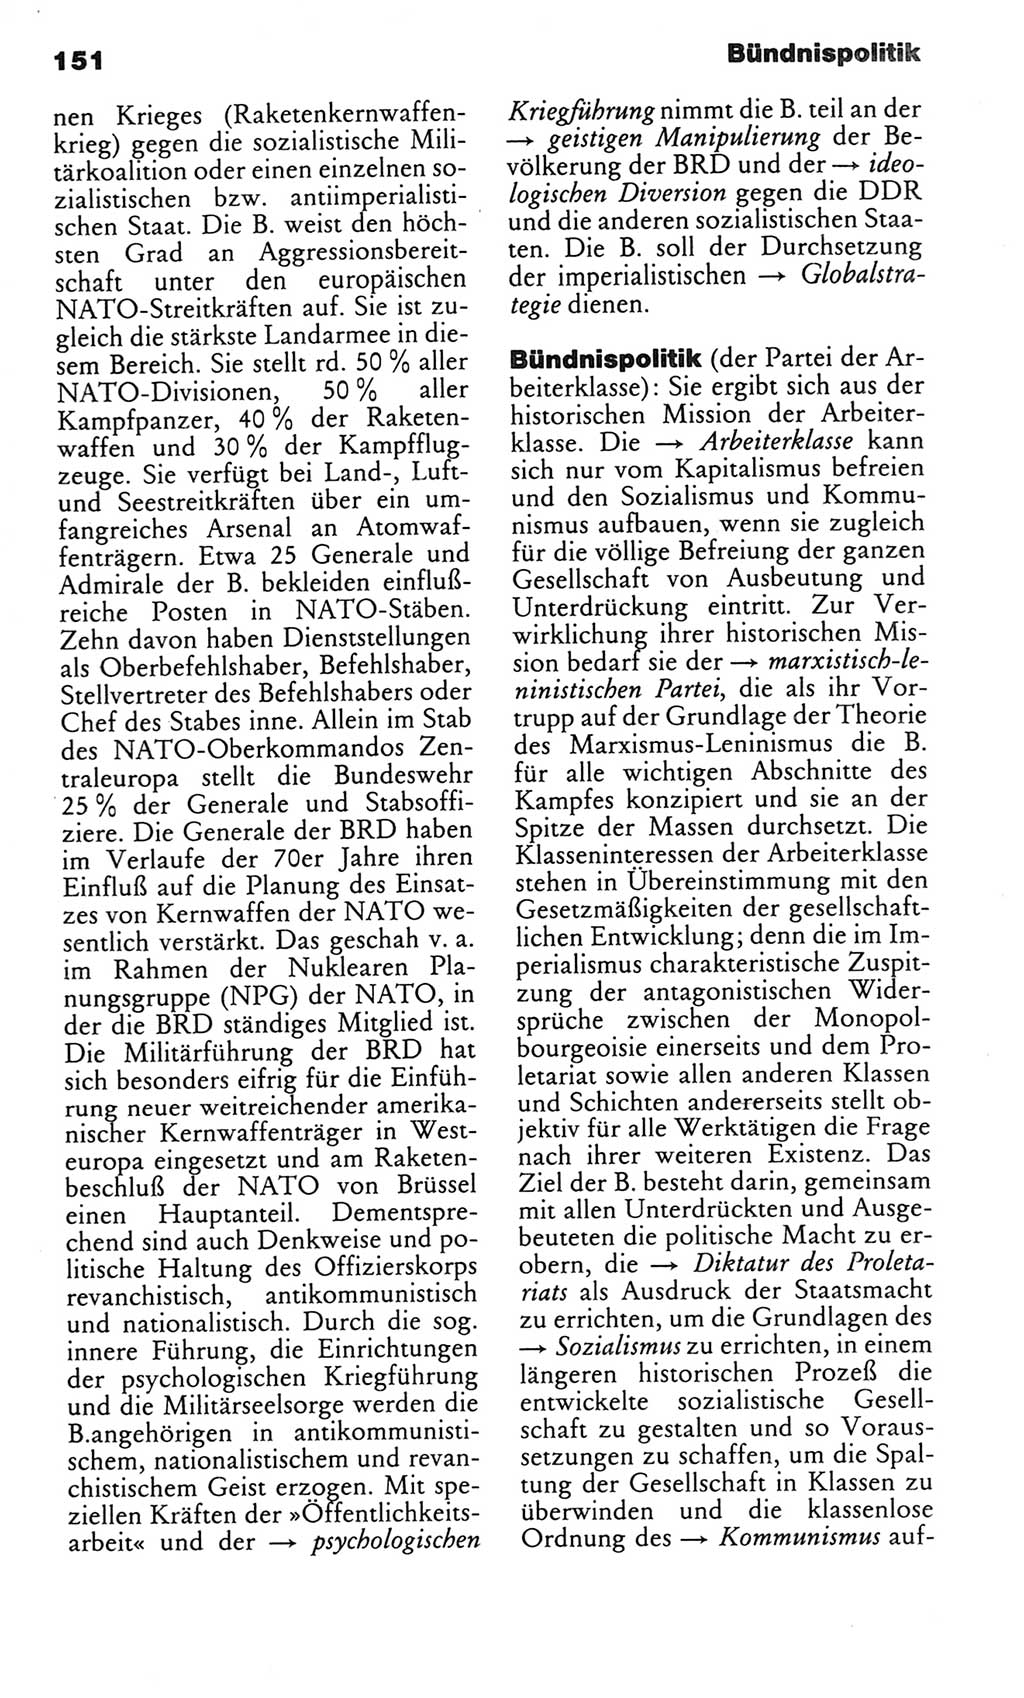 Kleines politisches Wörterbuch [Deutsche Demokratische Republik (DDR)] 1985, Seite 151 (Kl. pol. Wb. DDR 1985, S. 151)